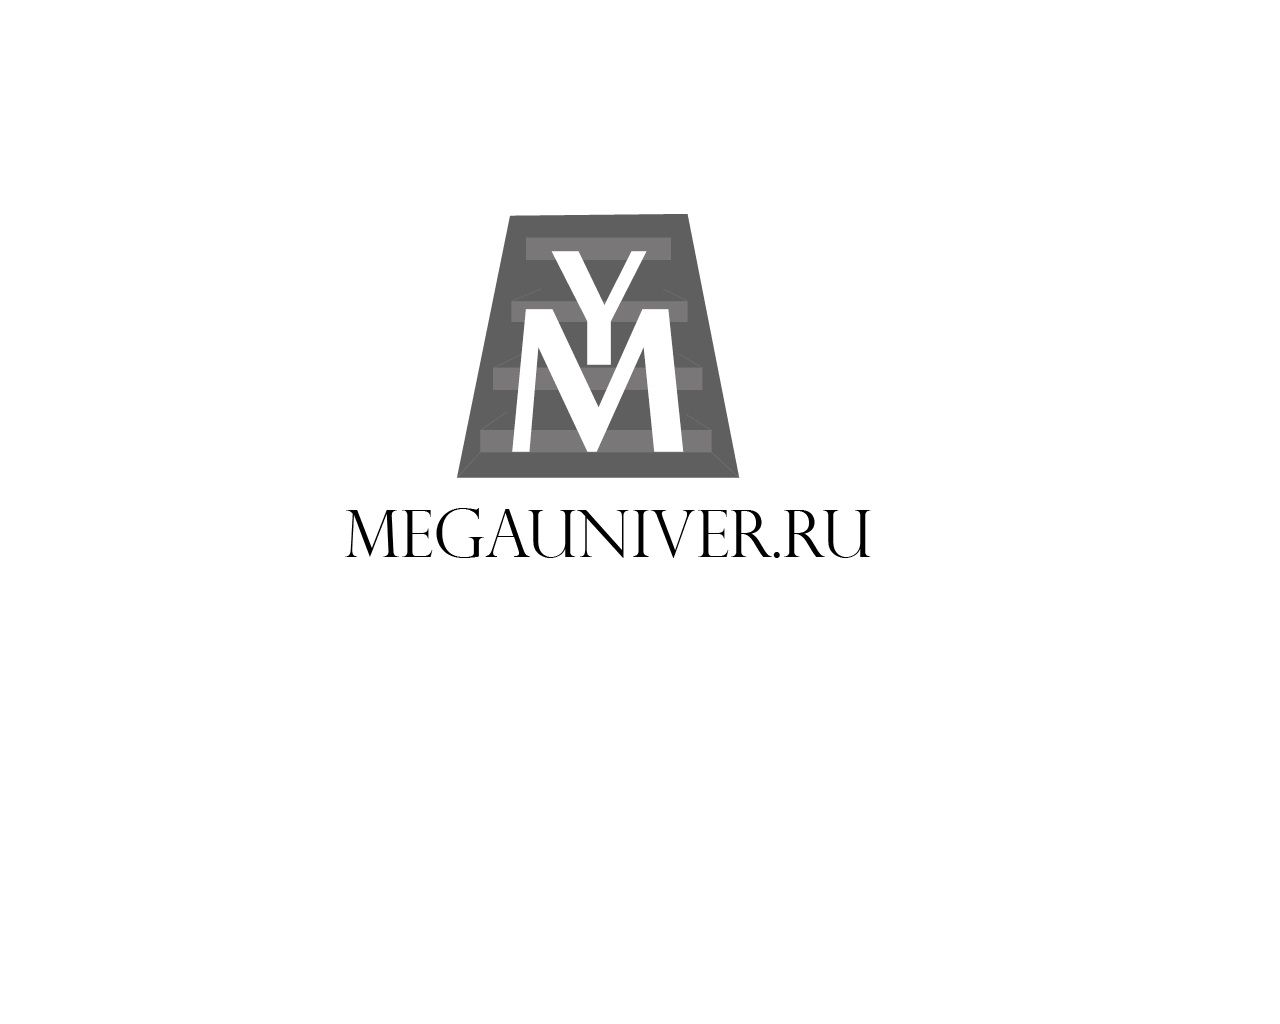 Разработка логотипа для сайта megauniver.ru - дизайнер BeSSpaloFF